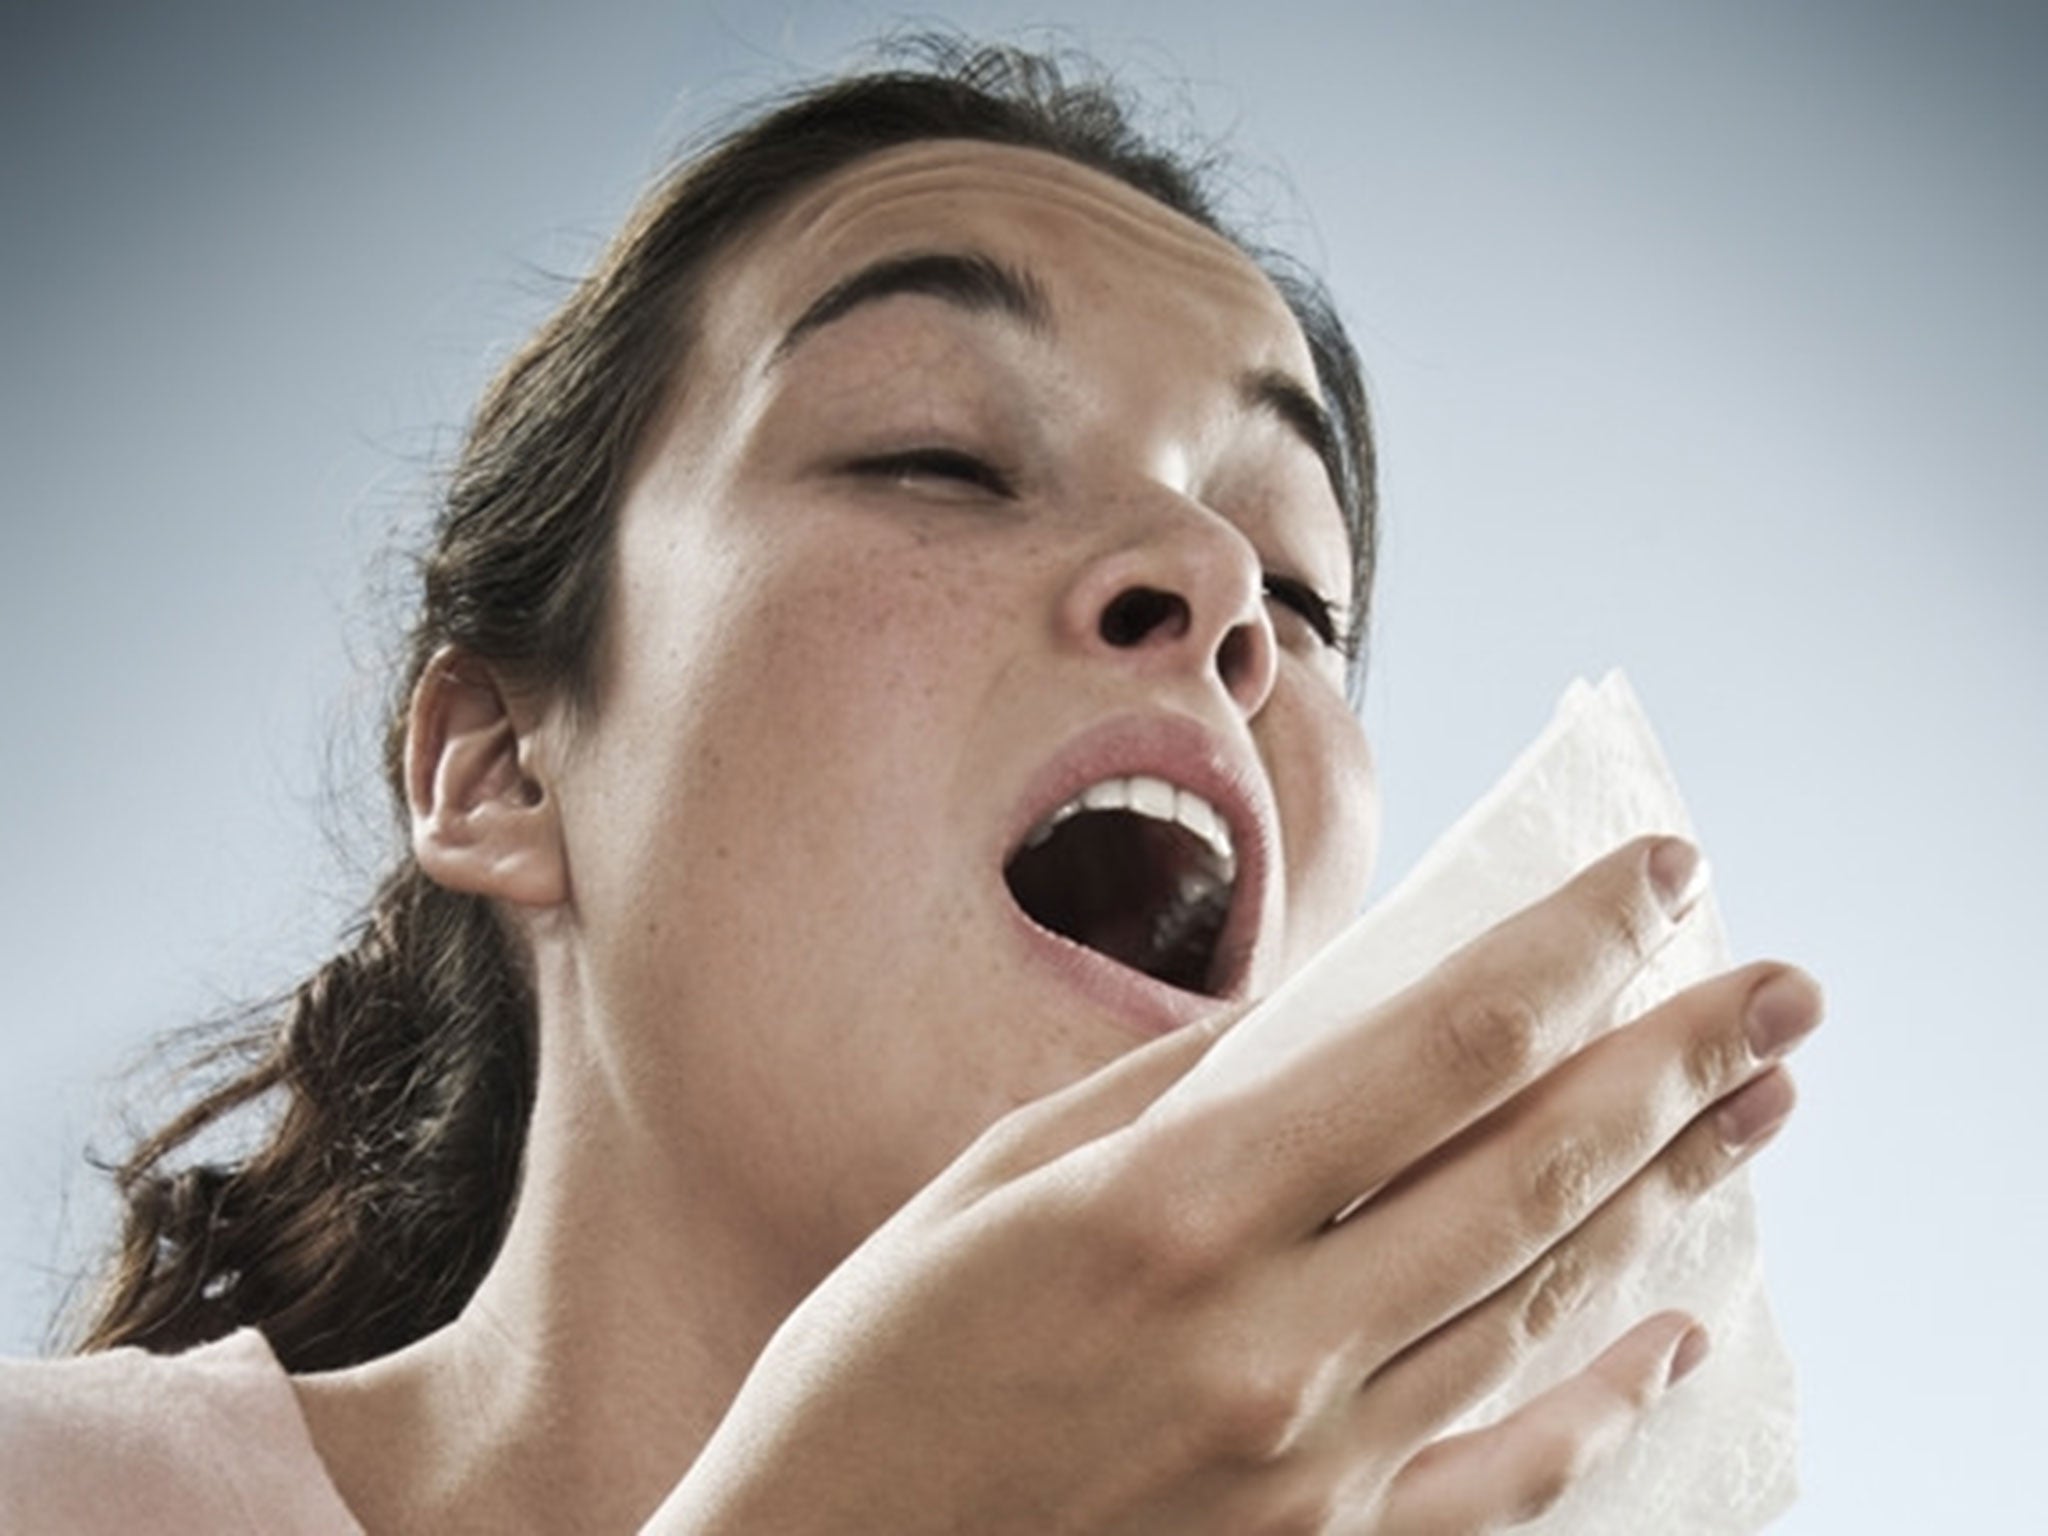 A woman sneezes